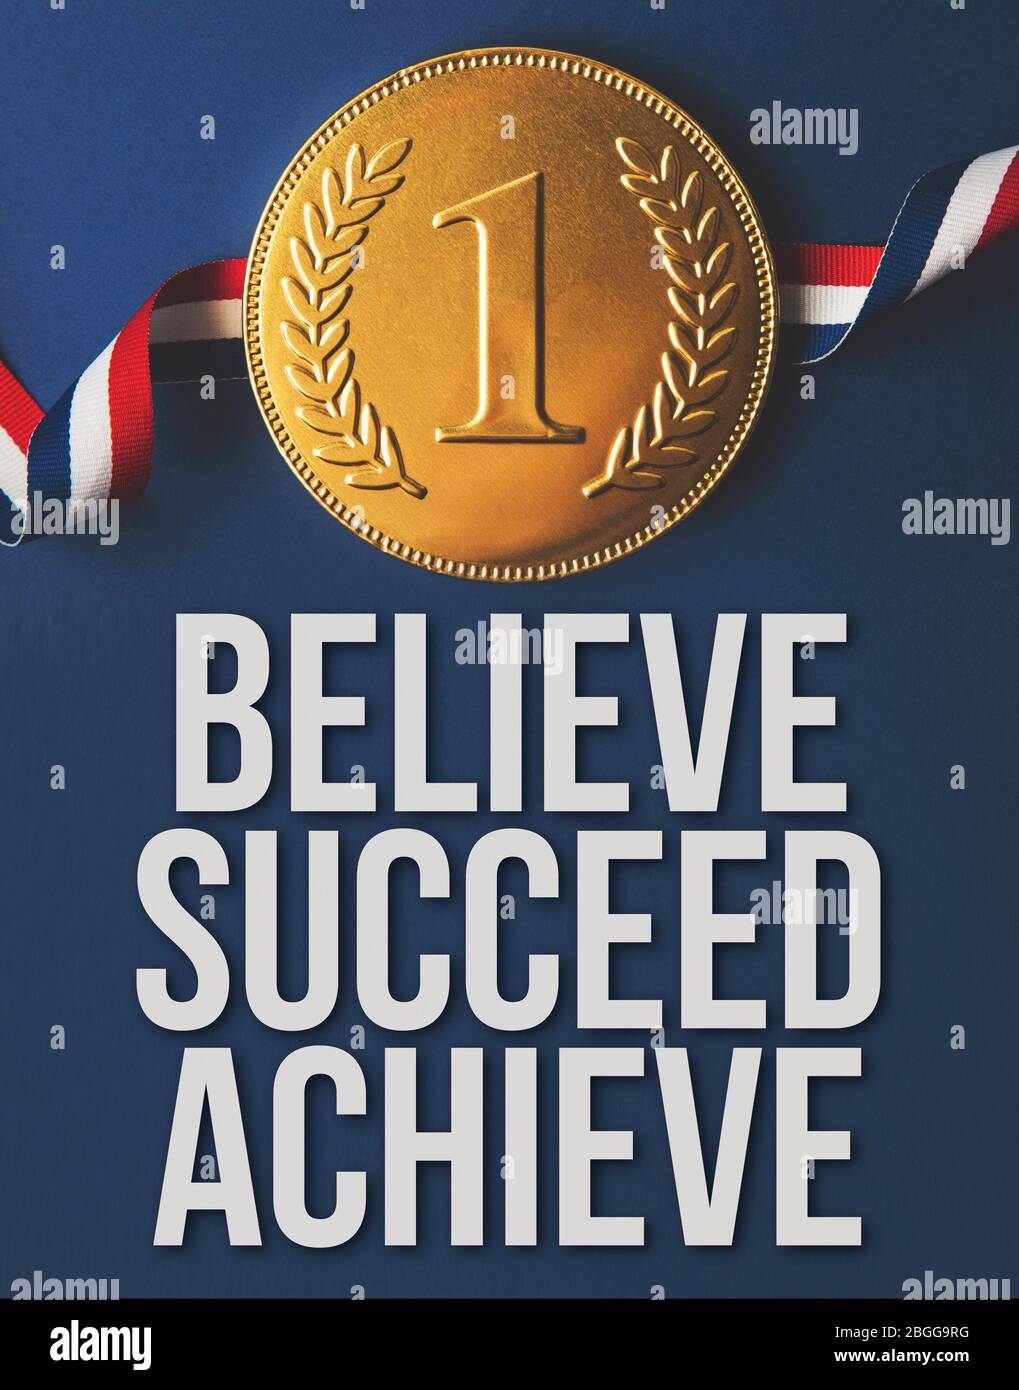 creer éxito lograr mensaje motivacional con medalla de oro ganador Foto de stock